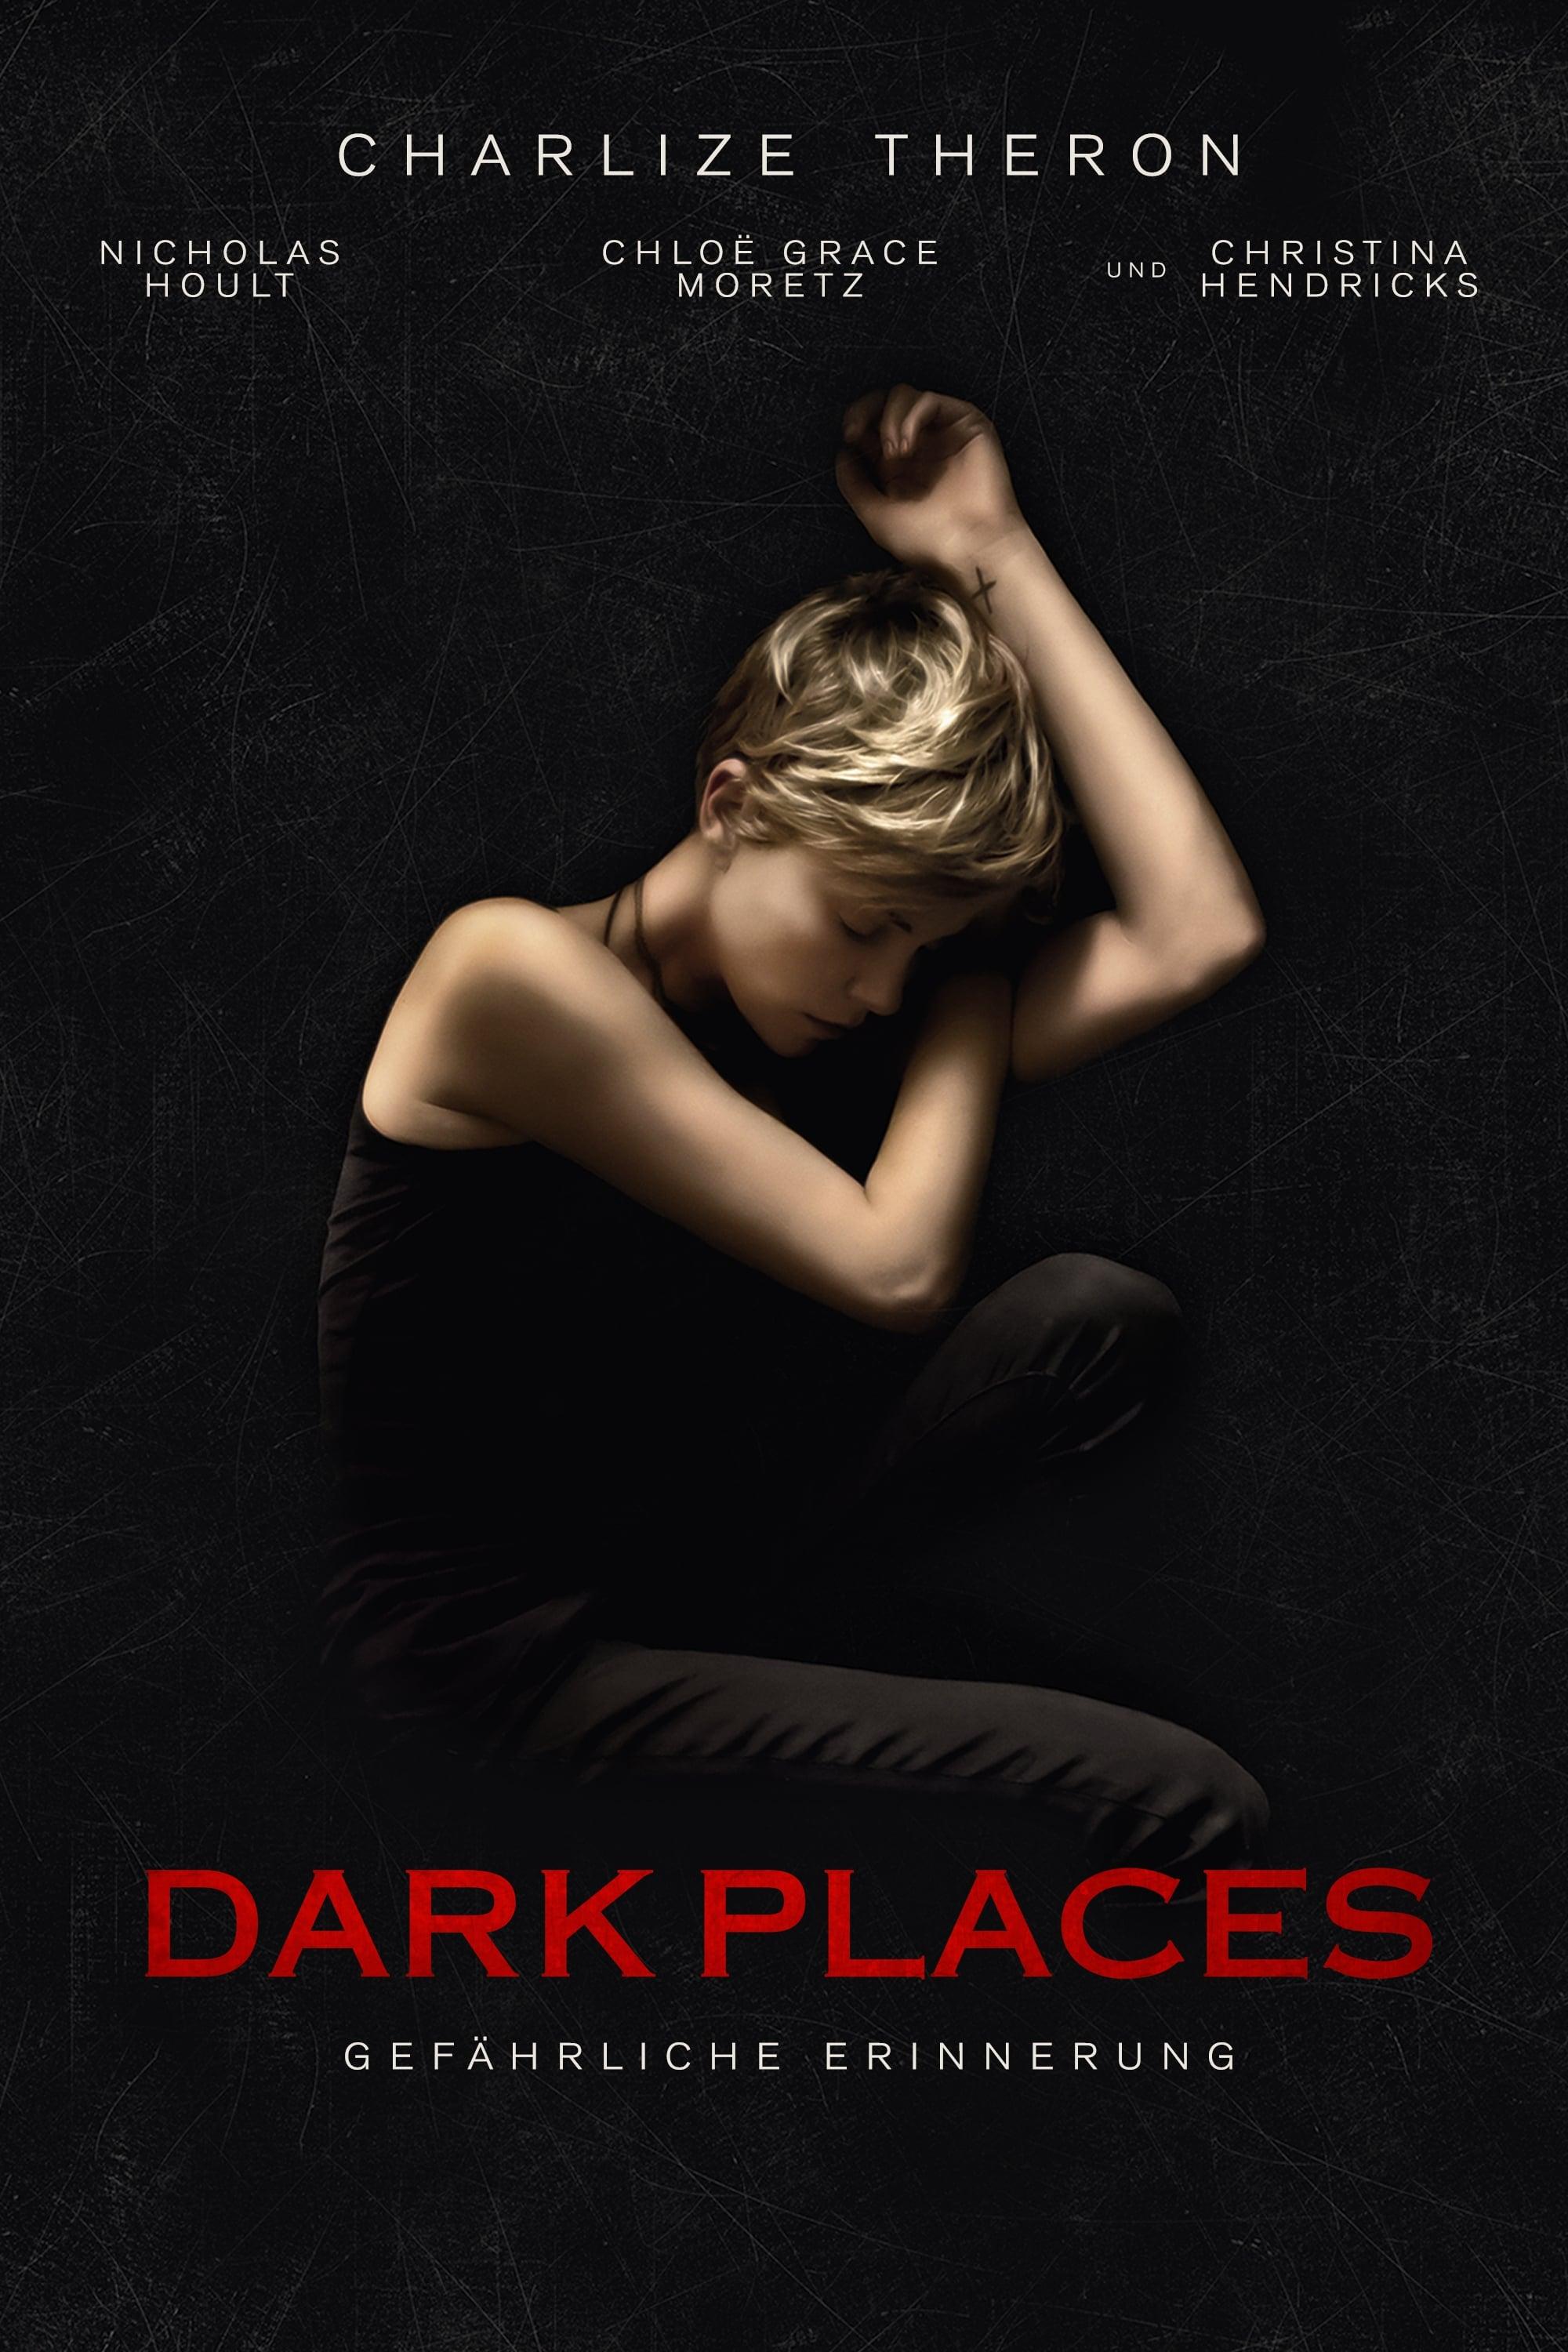 Dark Places - Gefährliche Erinnerung poster